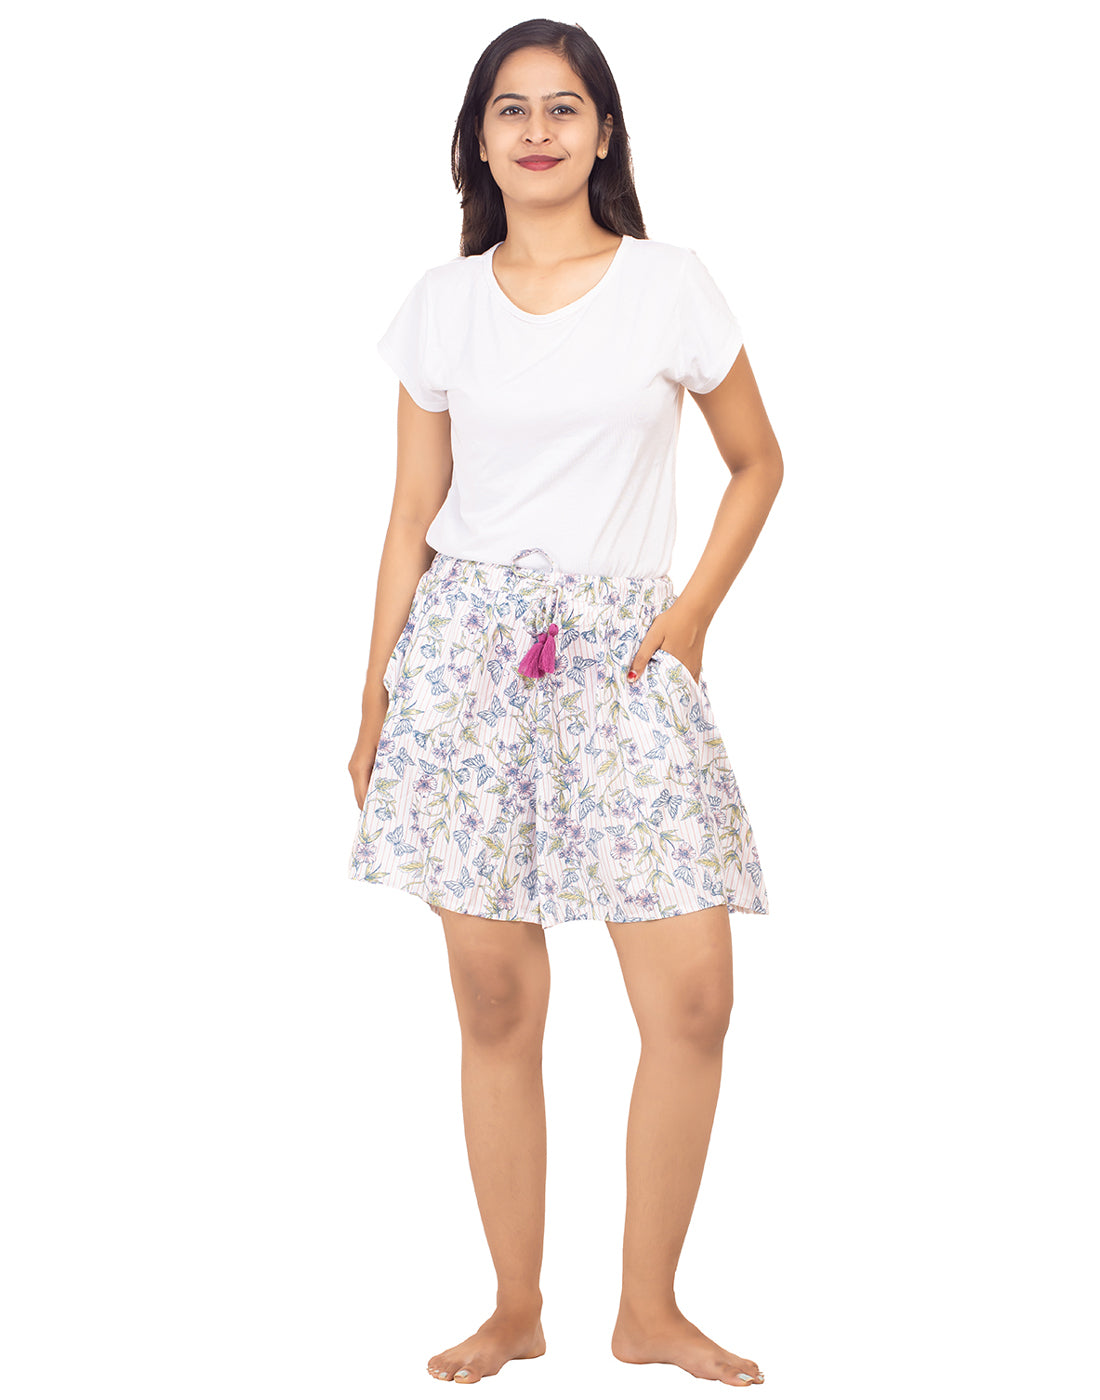 Culottes Shorts for Women-Butterflies